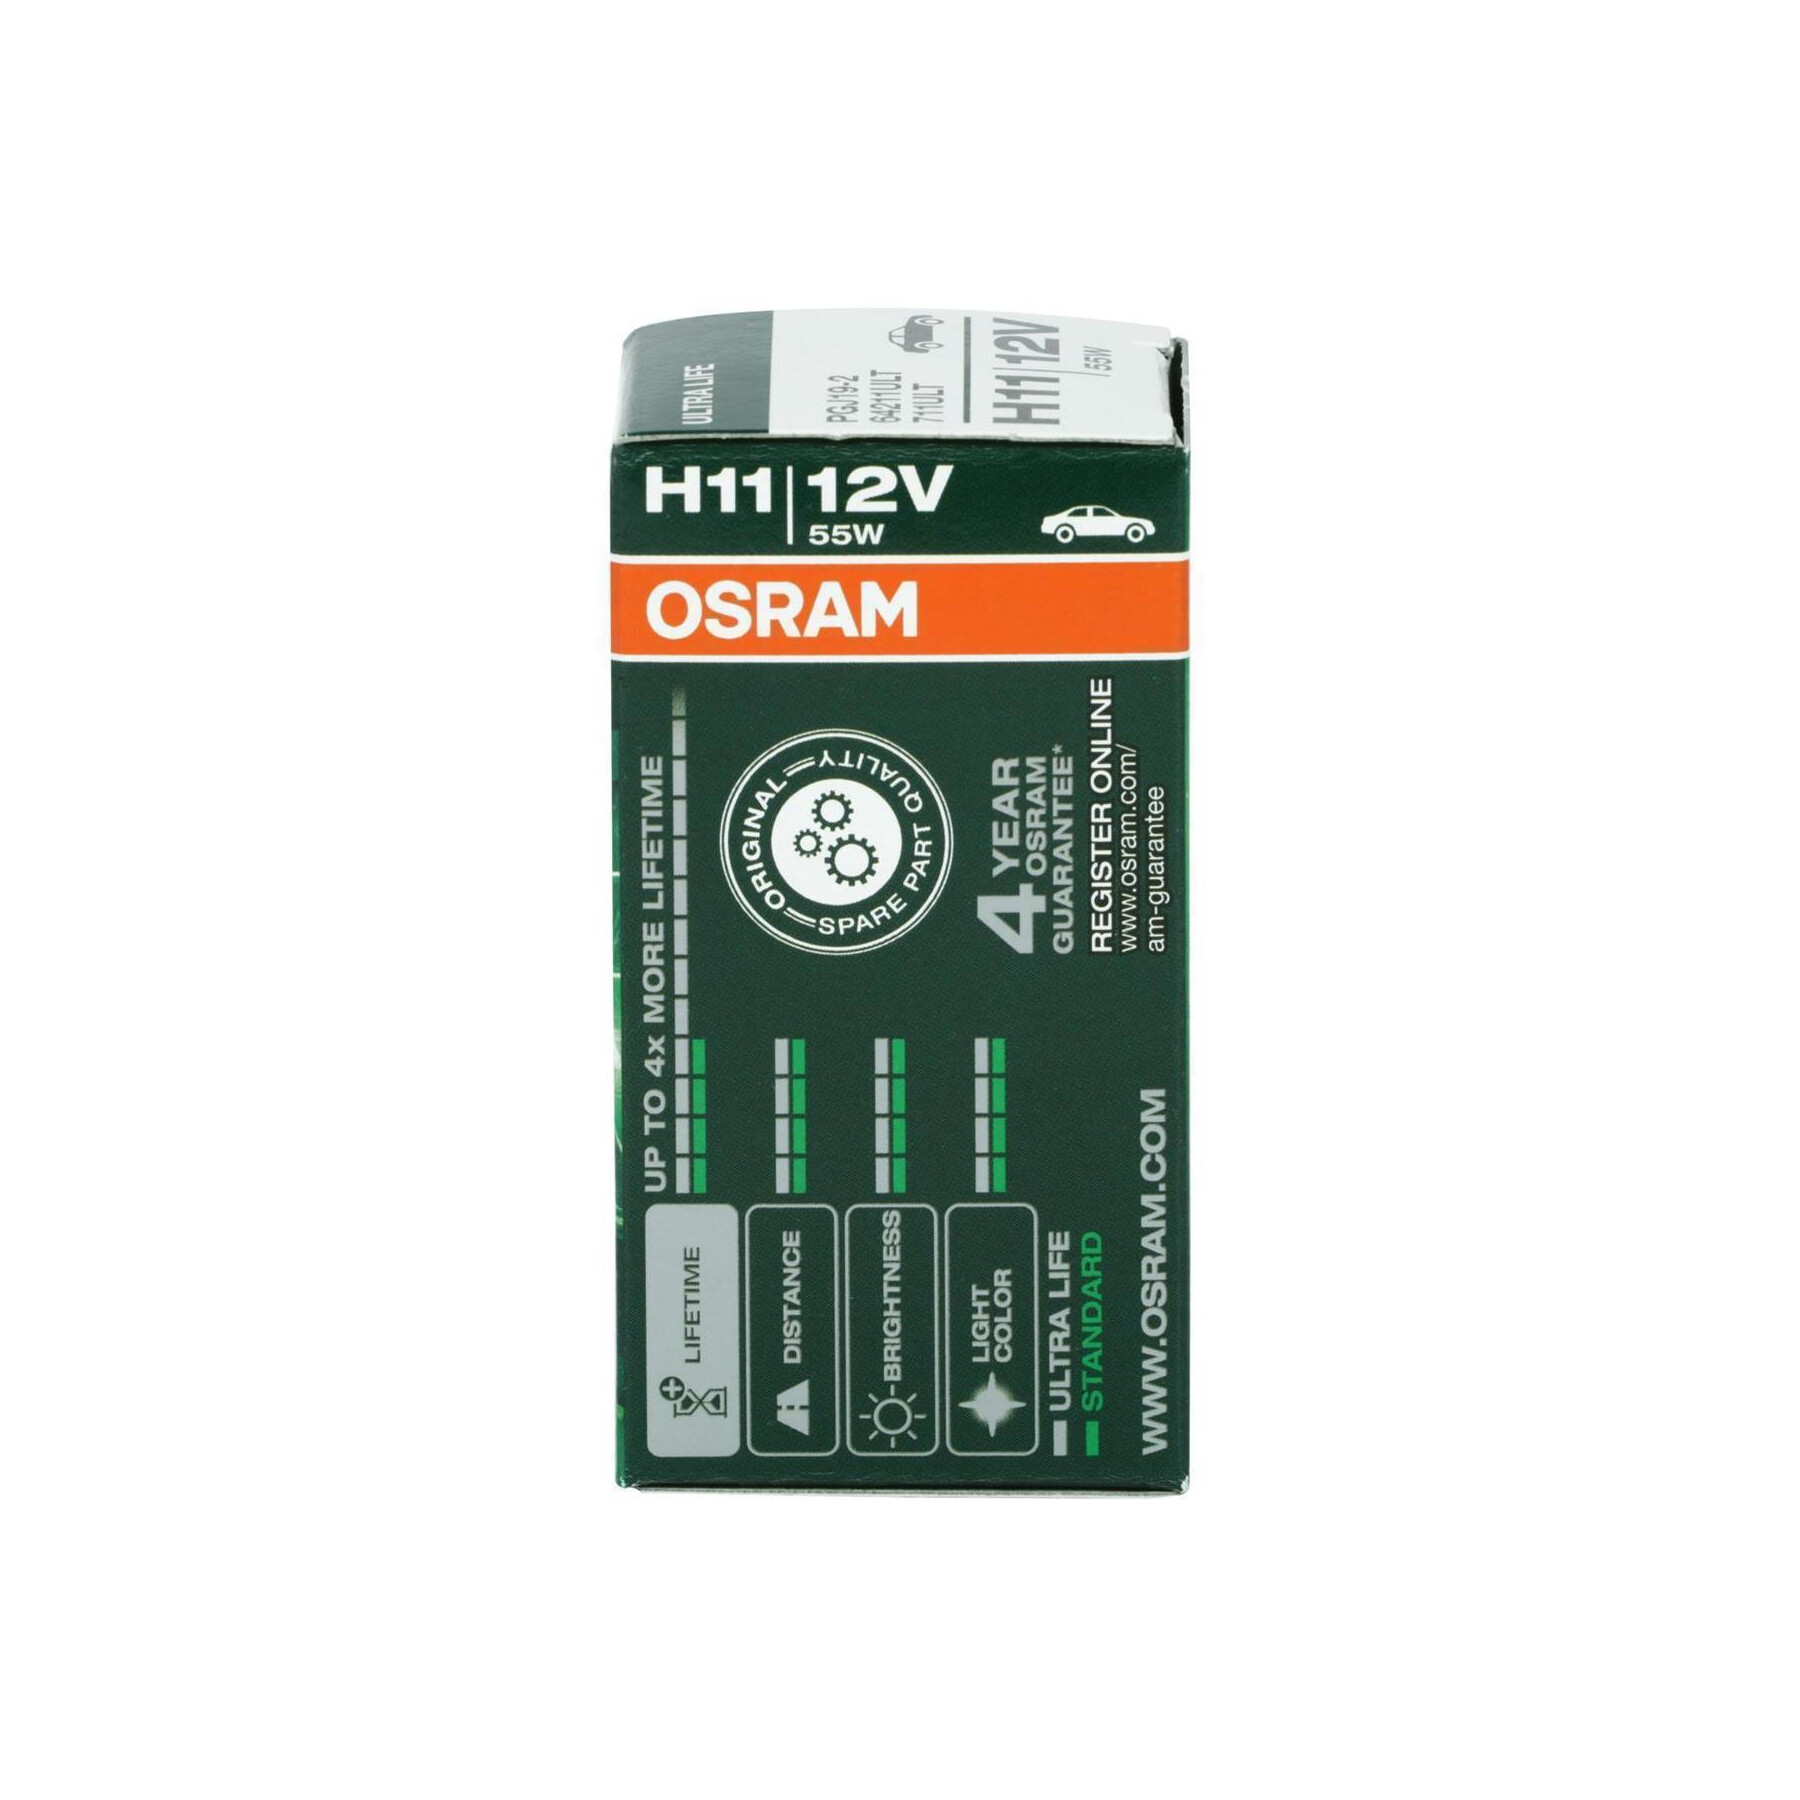 Buy OSRAM 64211ULT-HCB Halogen bulb Ultra Life H11 55 W 12 V